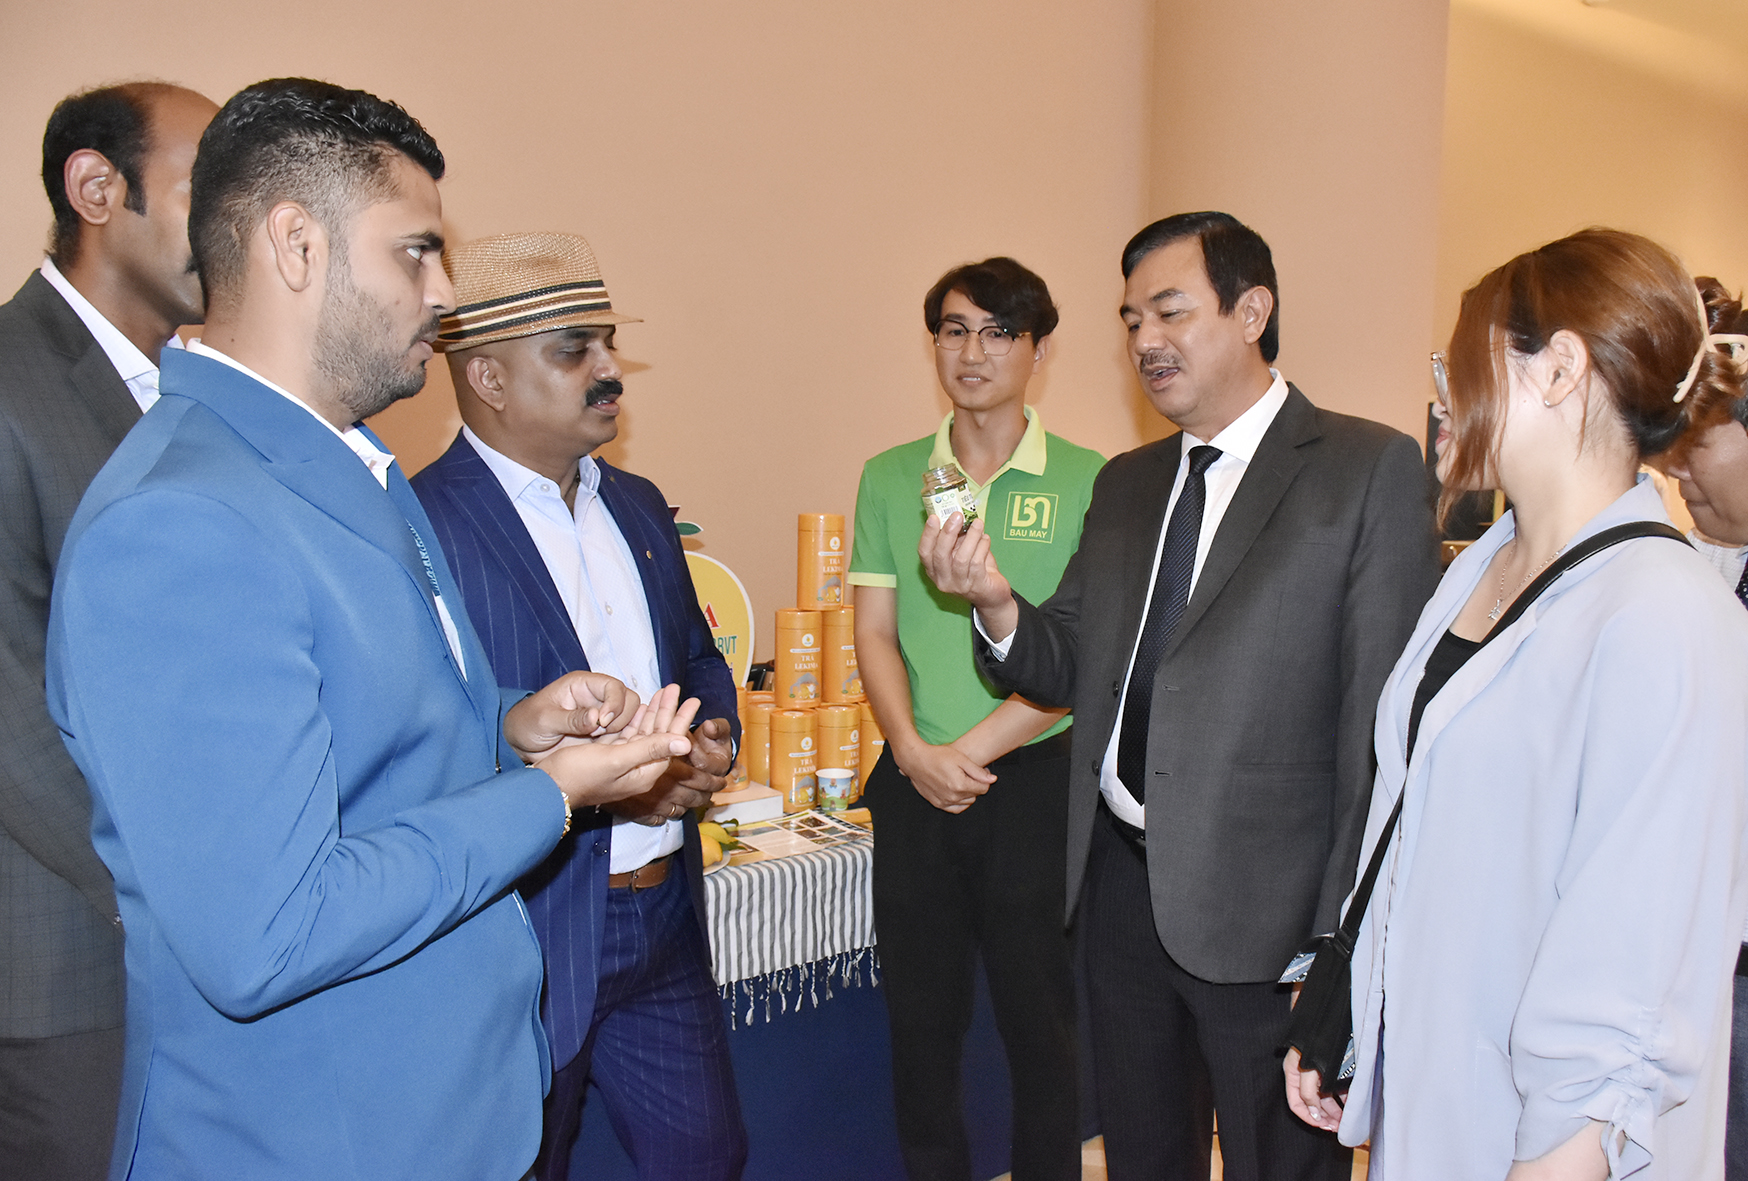 Ông Trịnh Hàng, Giám đốc Sở Du lịch (thứ hai từ phải sang) giới thiệu sản phẩm OCOP - tiêu Bầu Mây đến đại diện các doanh nghiệp lữ hành Ấn Độ trong khuôn khổ hội thảo xúc tiến du lịch Ấn Độ.